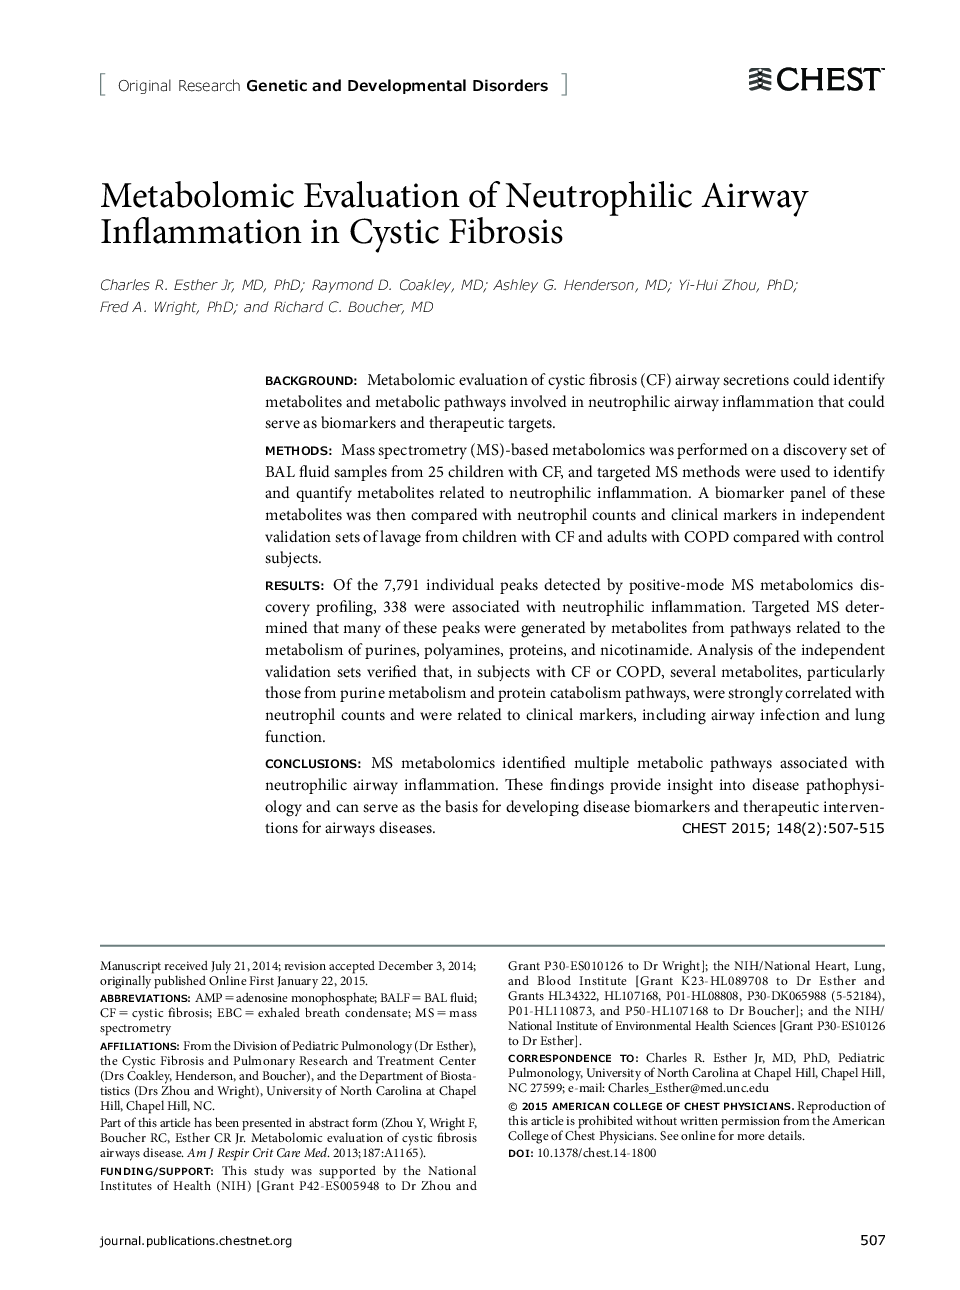 ارزیابی متابولومیک التهاب فضایی نوتروفیل در فیبروز کیستی 